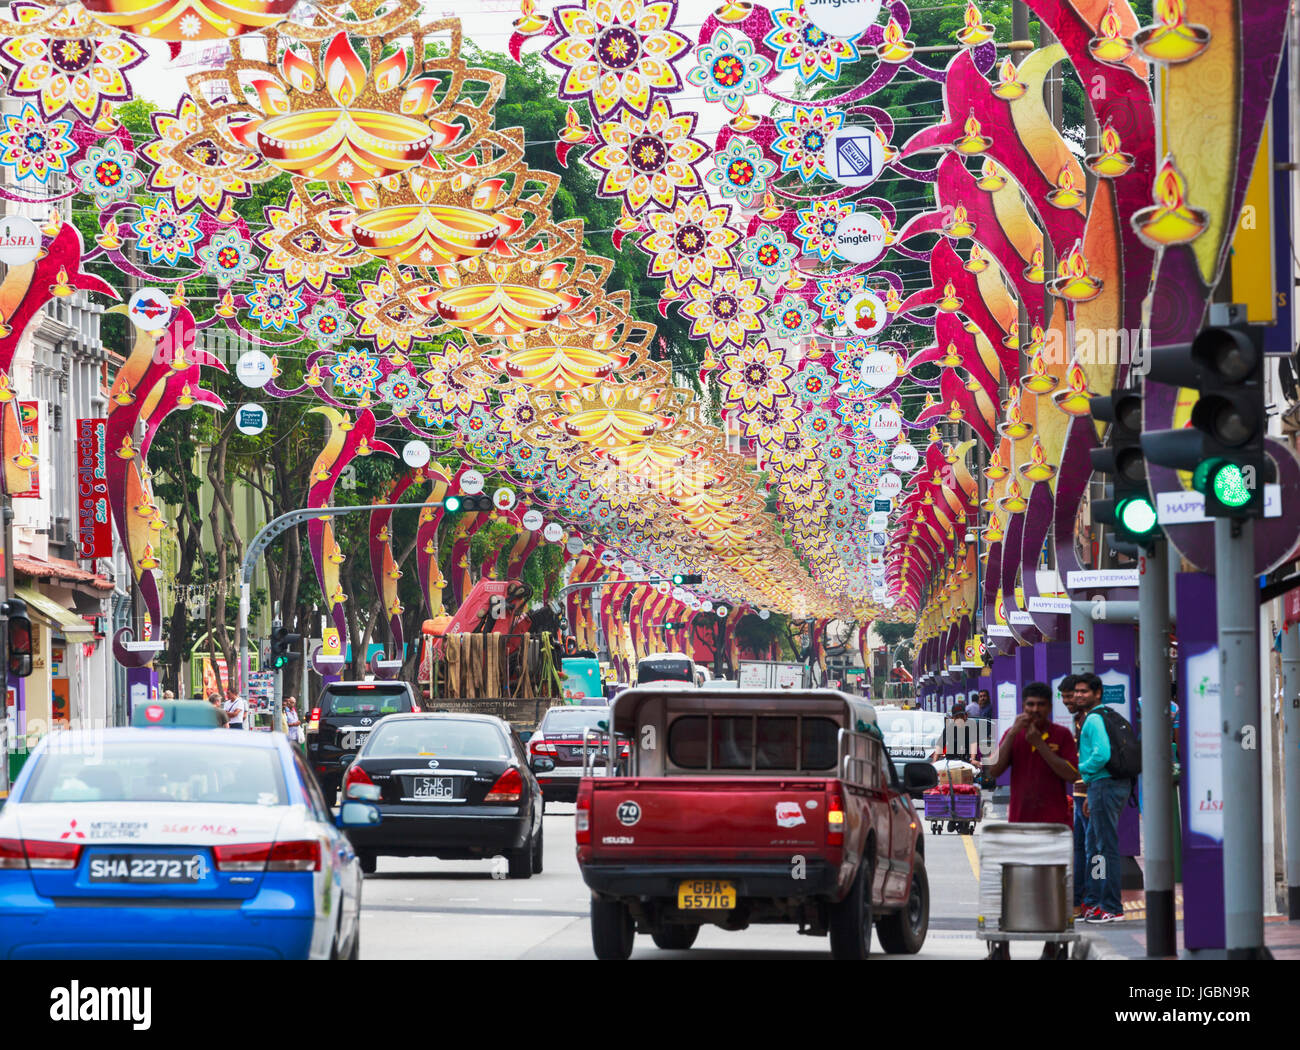 Repubblica di Singapore. Serangoon Road, la principale arteria della zona conosciuta come Little India. Le decorazioni sono per il Deepwali festival indù. Foto Stock